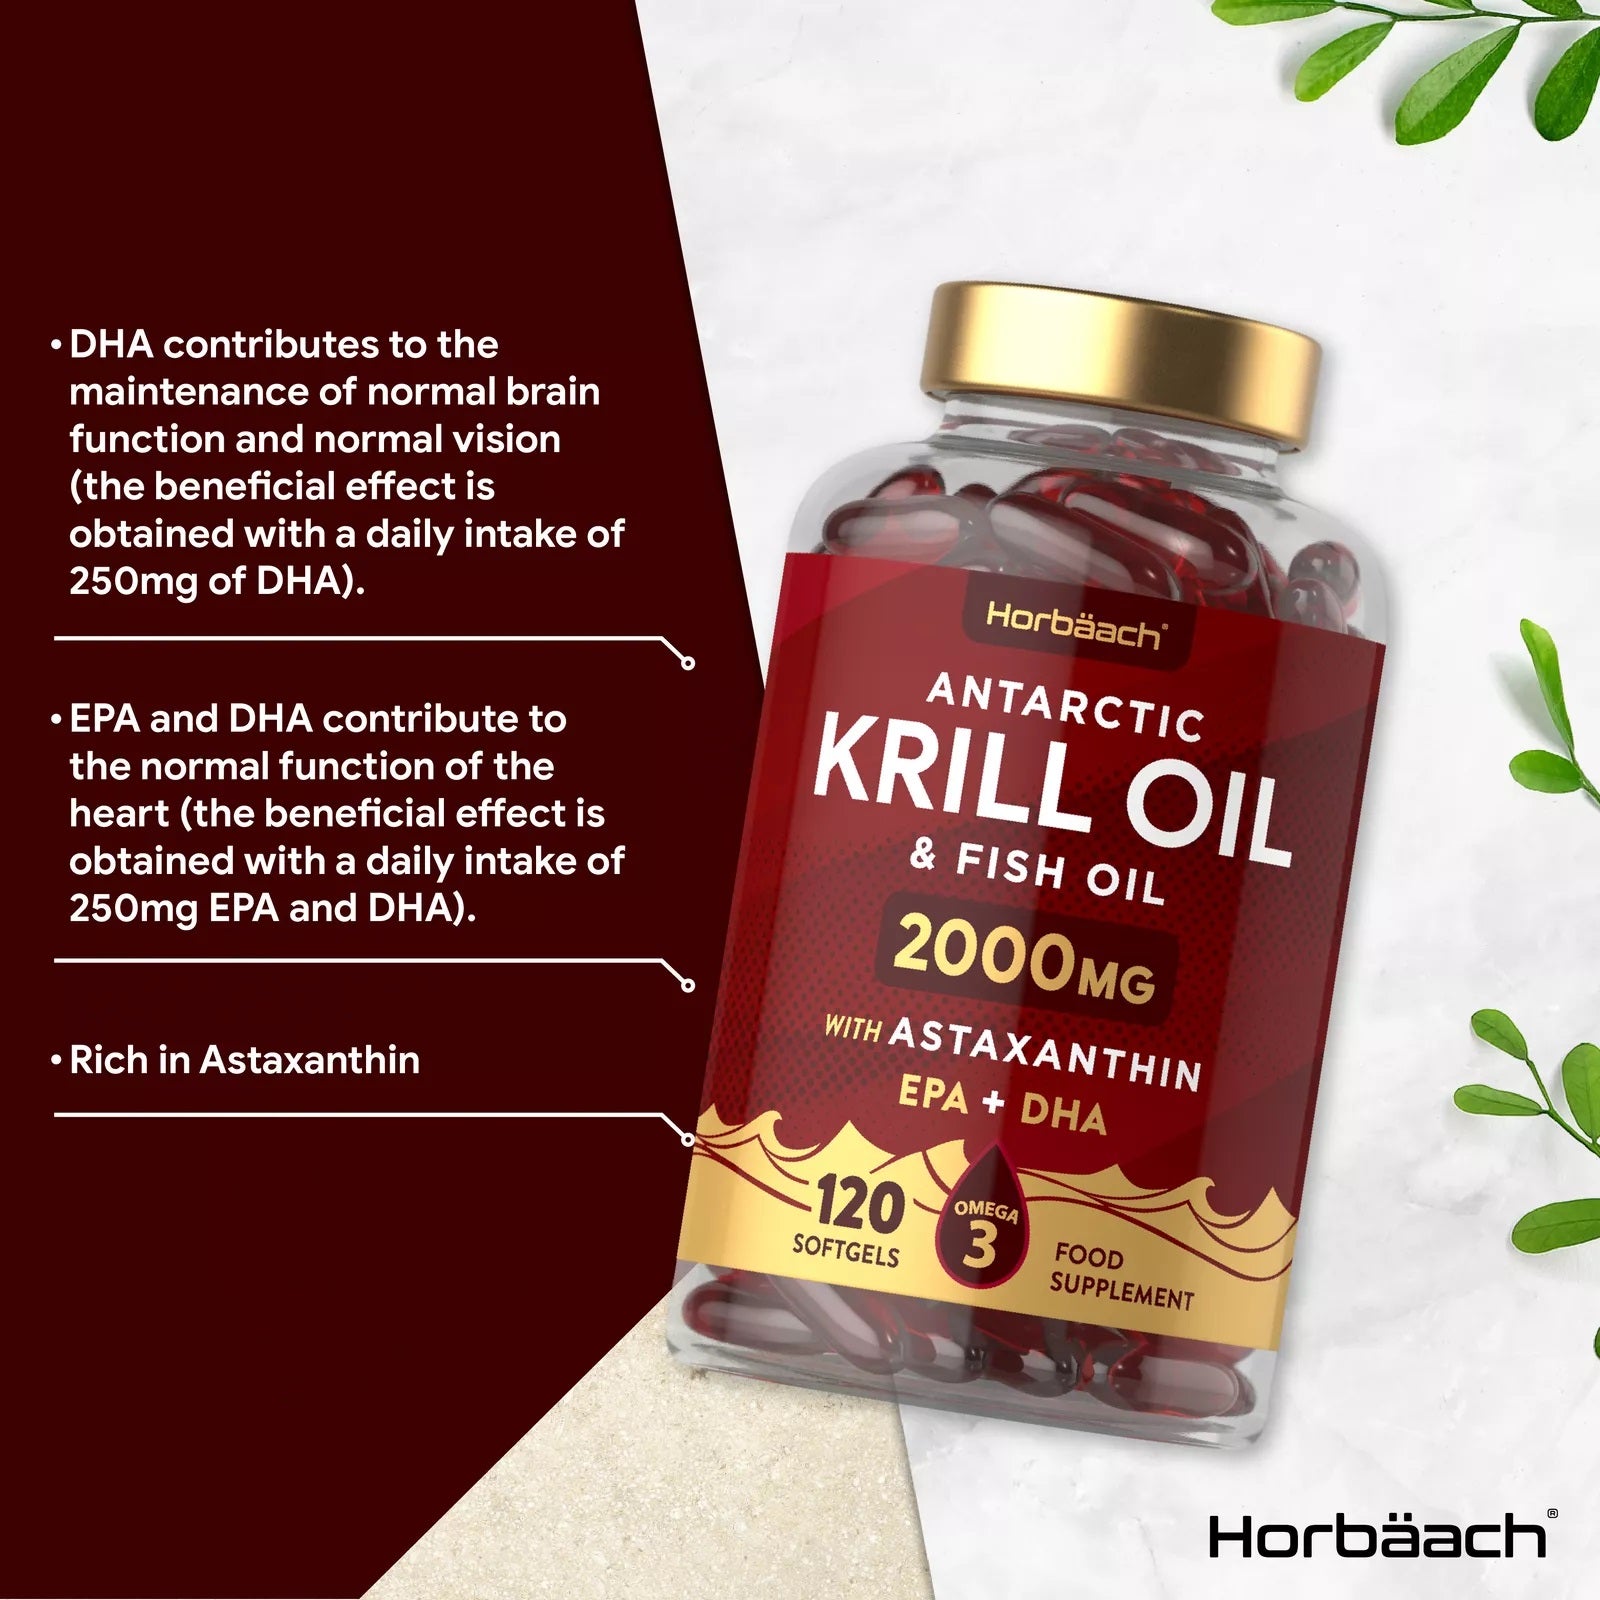 Antarctic Krill Oil 2000 mg | 120 Softgels